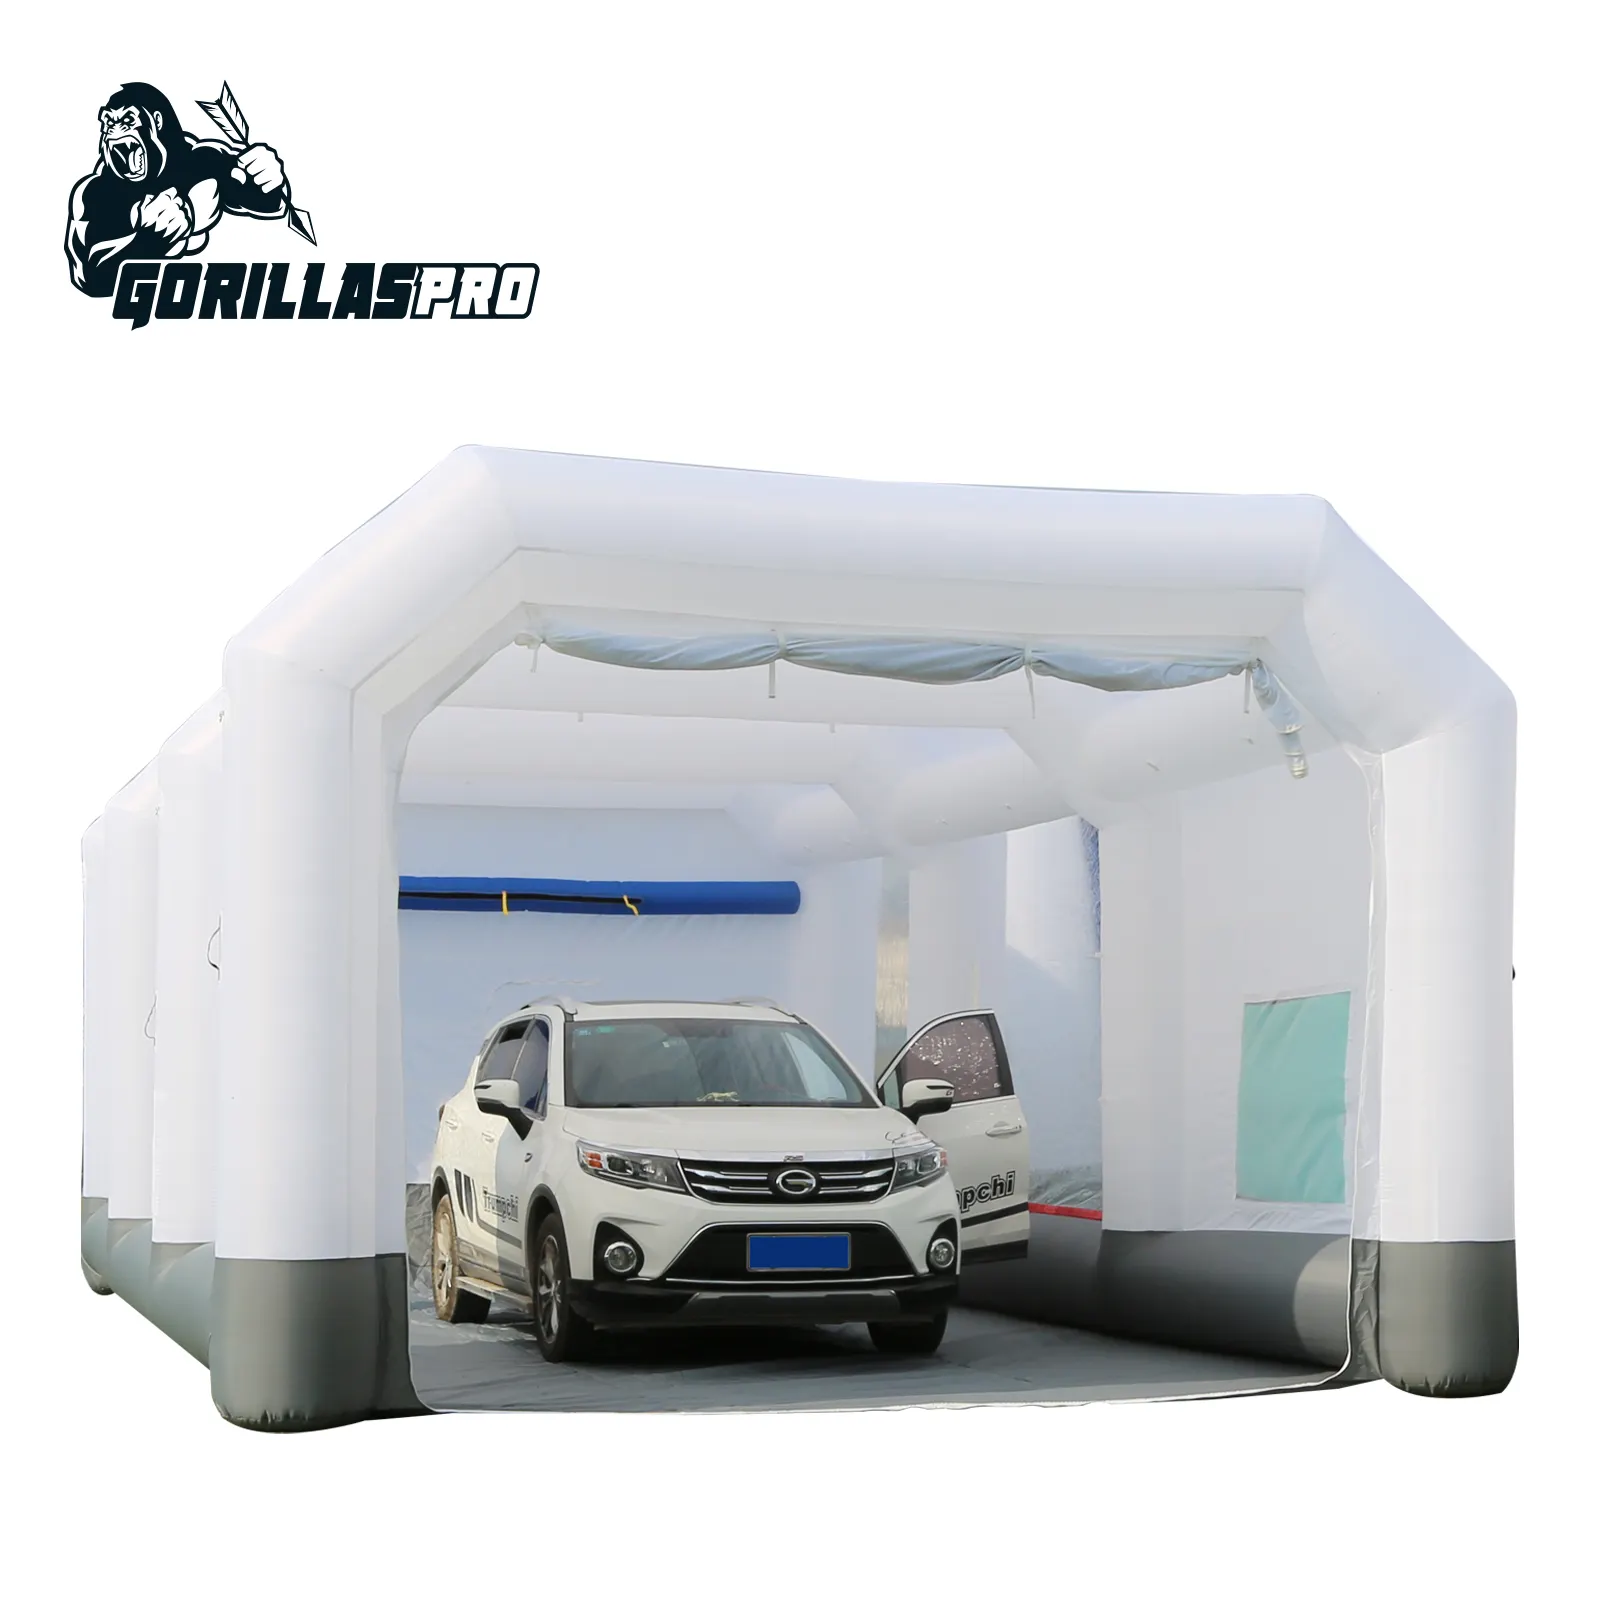 Cabine inflável para pintura de carros, 9x5x3.5m, inflável, personalizada, barata, para caminhão, Gorillaspro